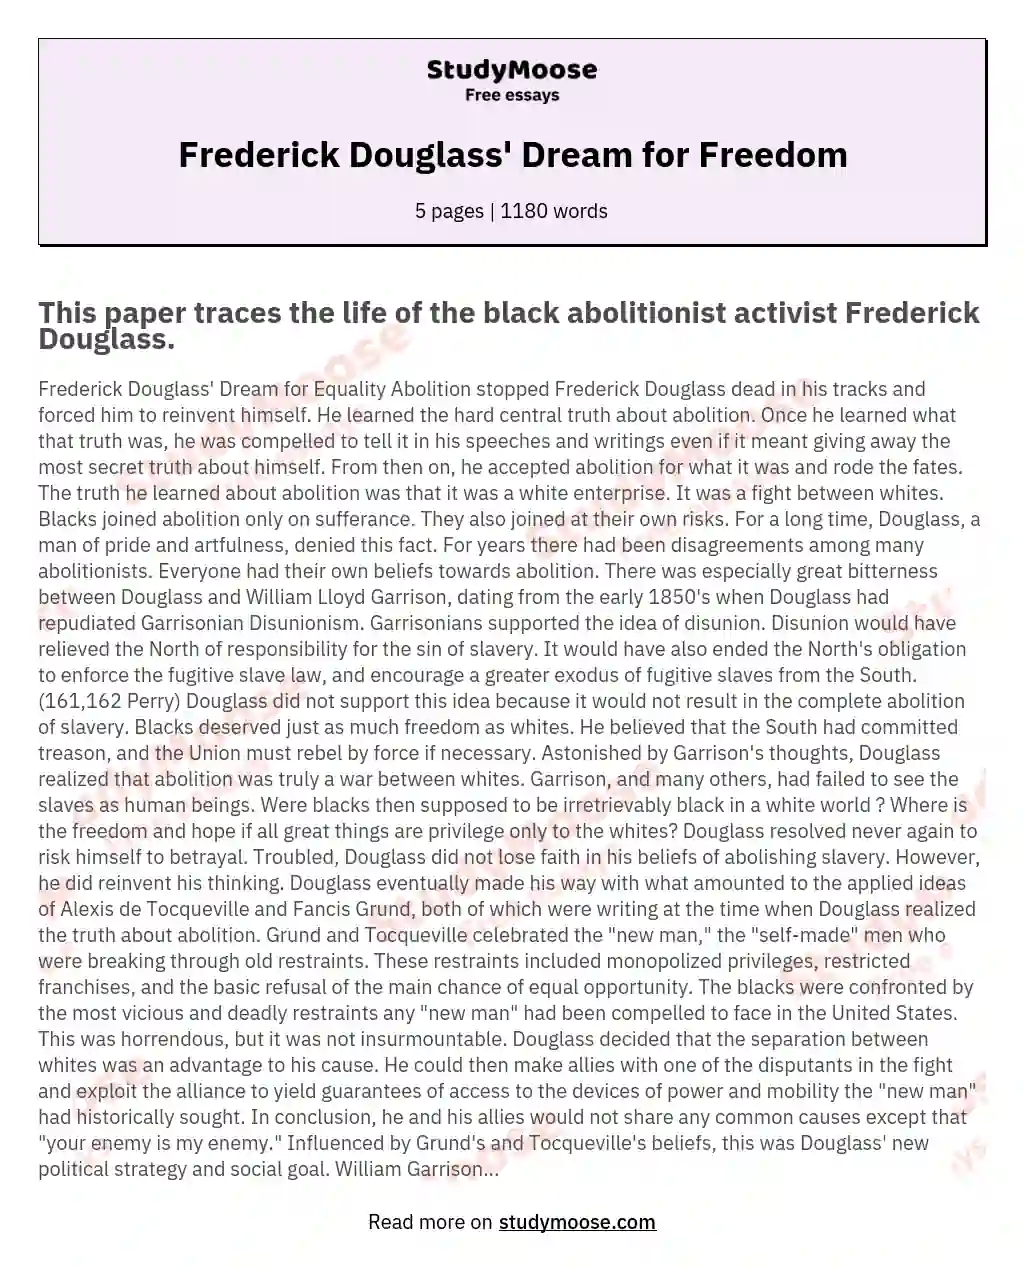 Frederick Douglass' Dream for Freedom essay